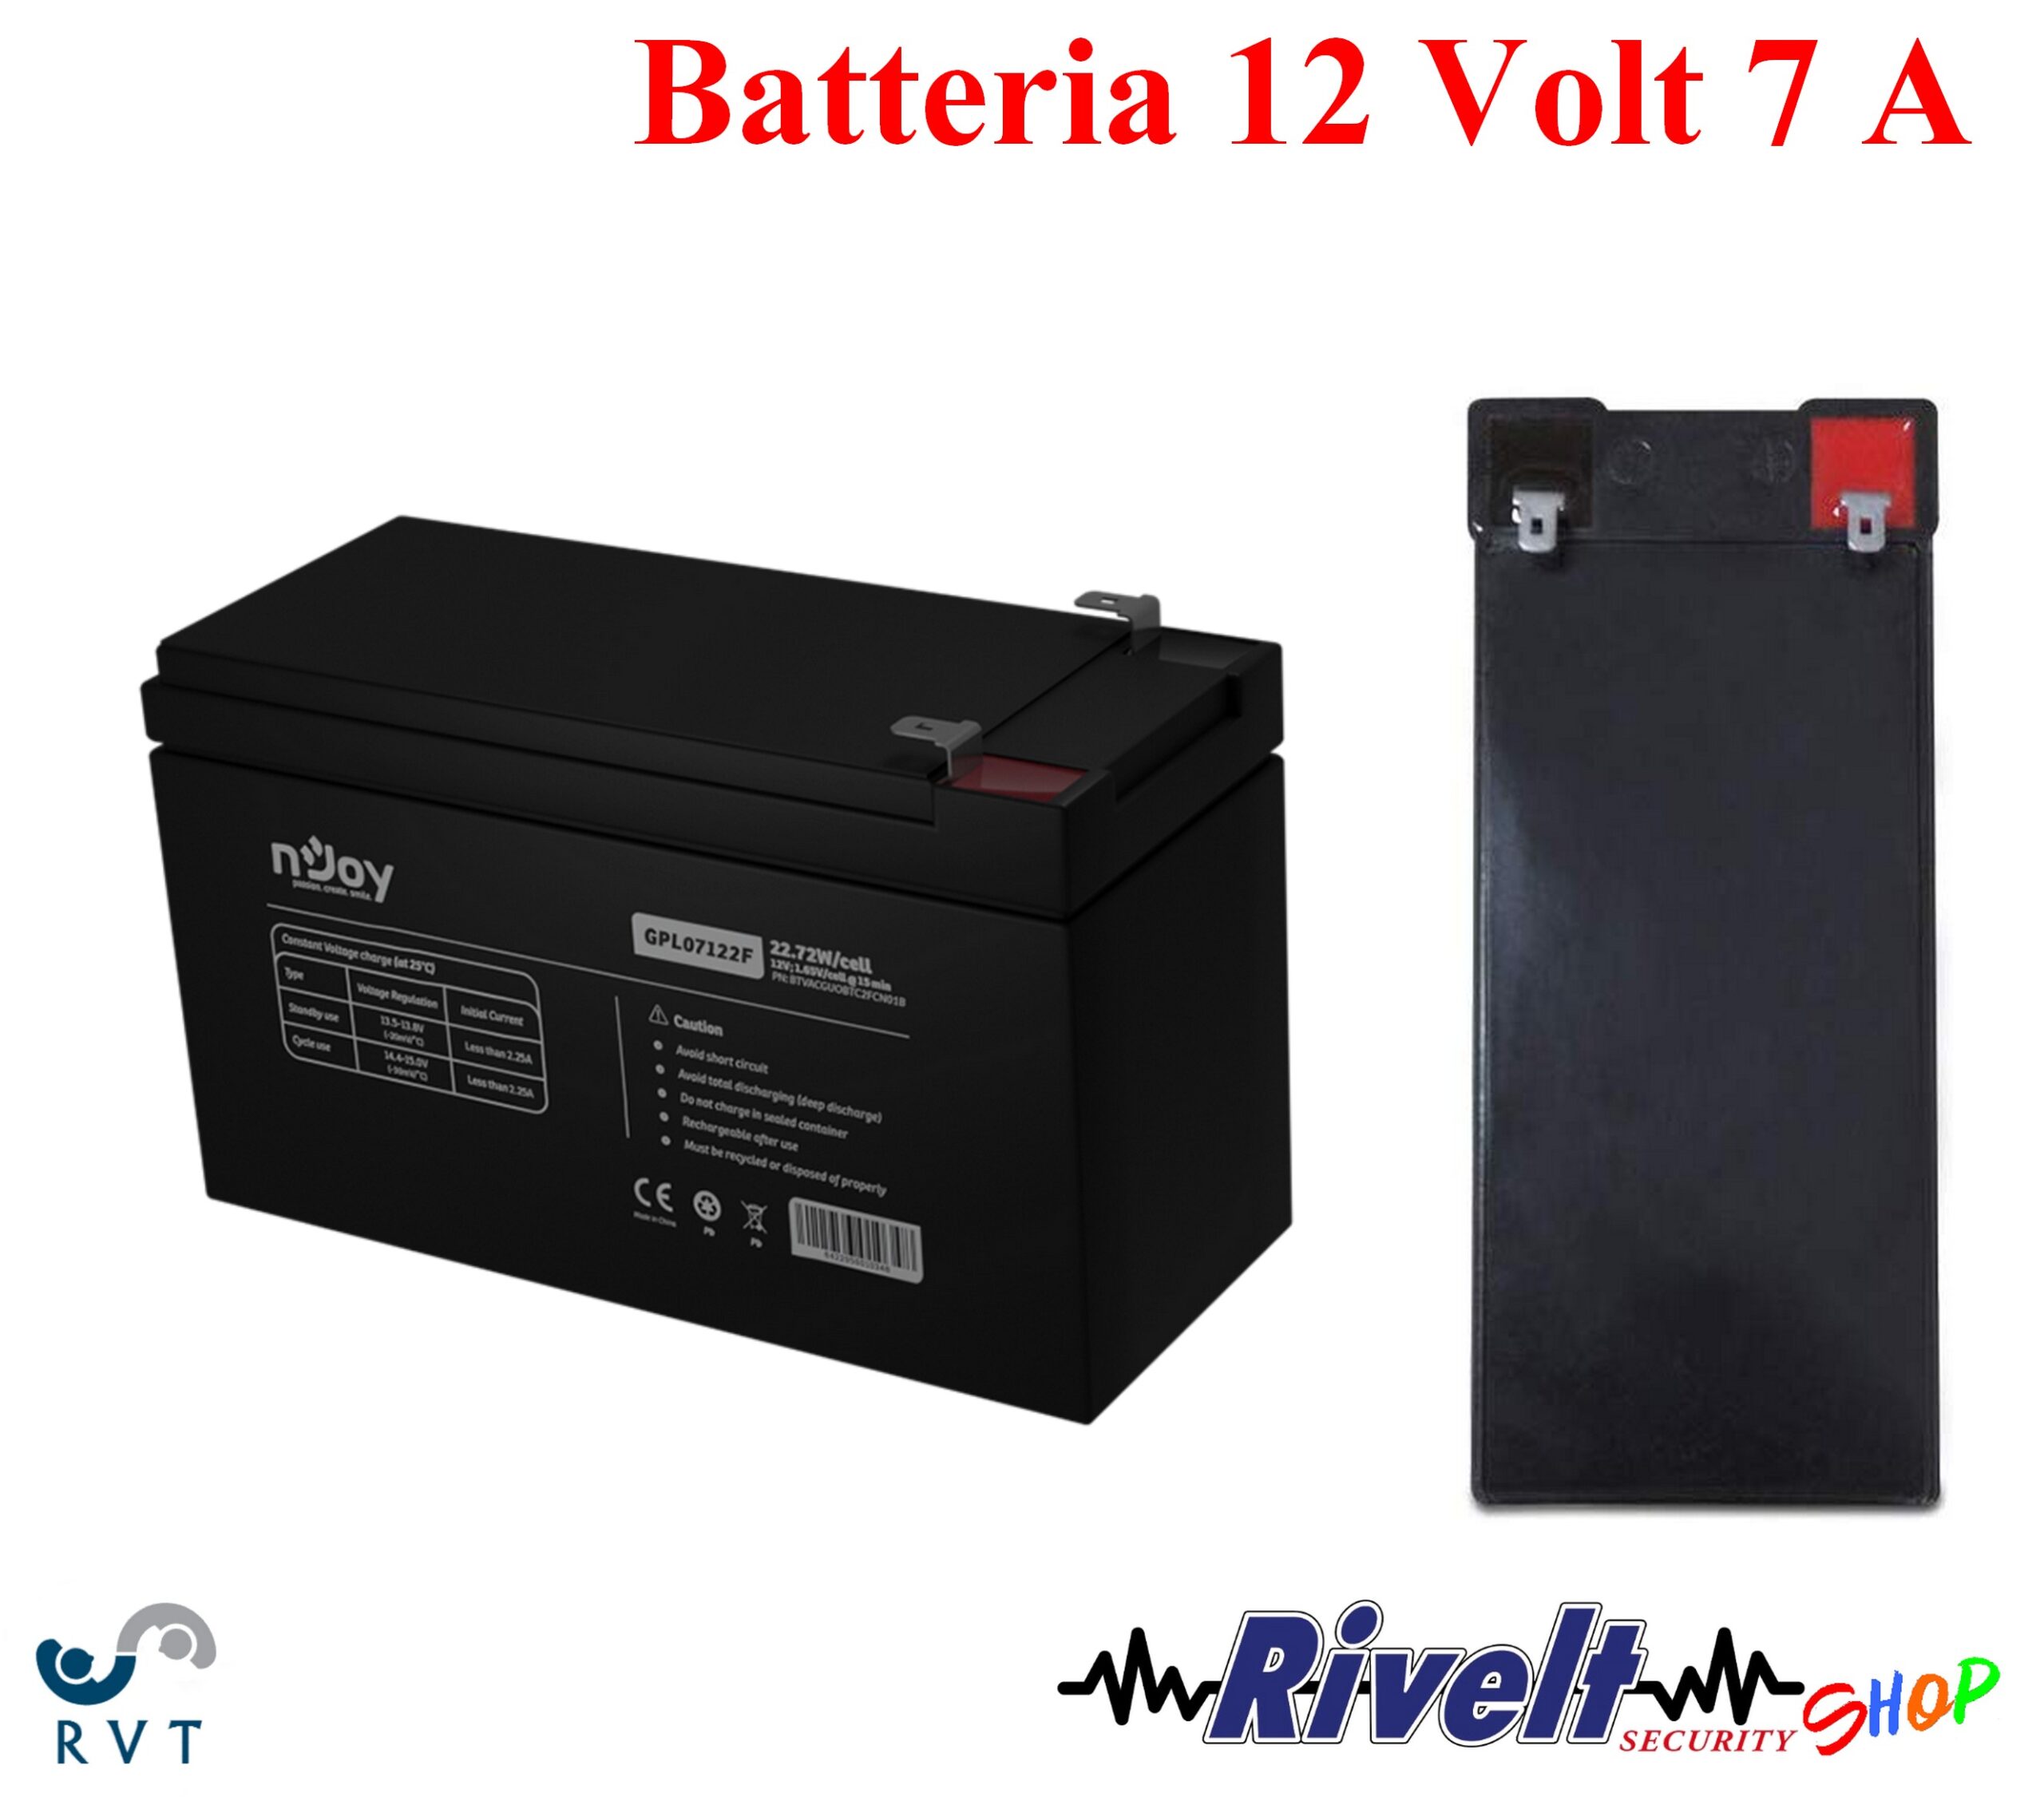 ANRAN Batteria Al Piombo 12V 12 Volt Ermetica 7A Ups Videosorveglianza Allarme Ups 